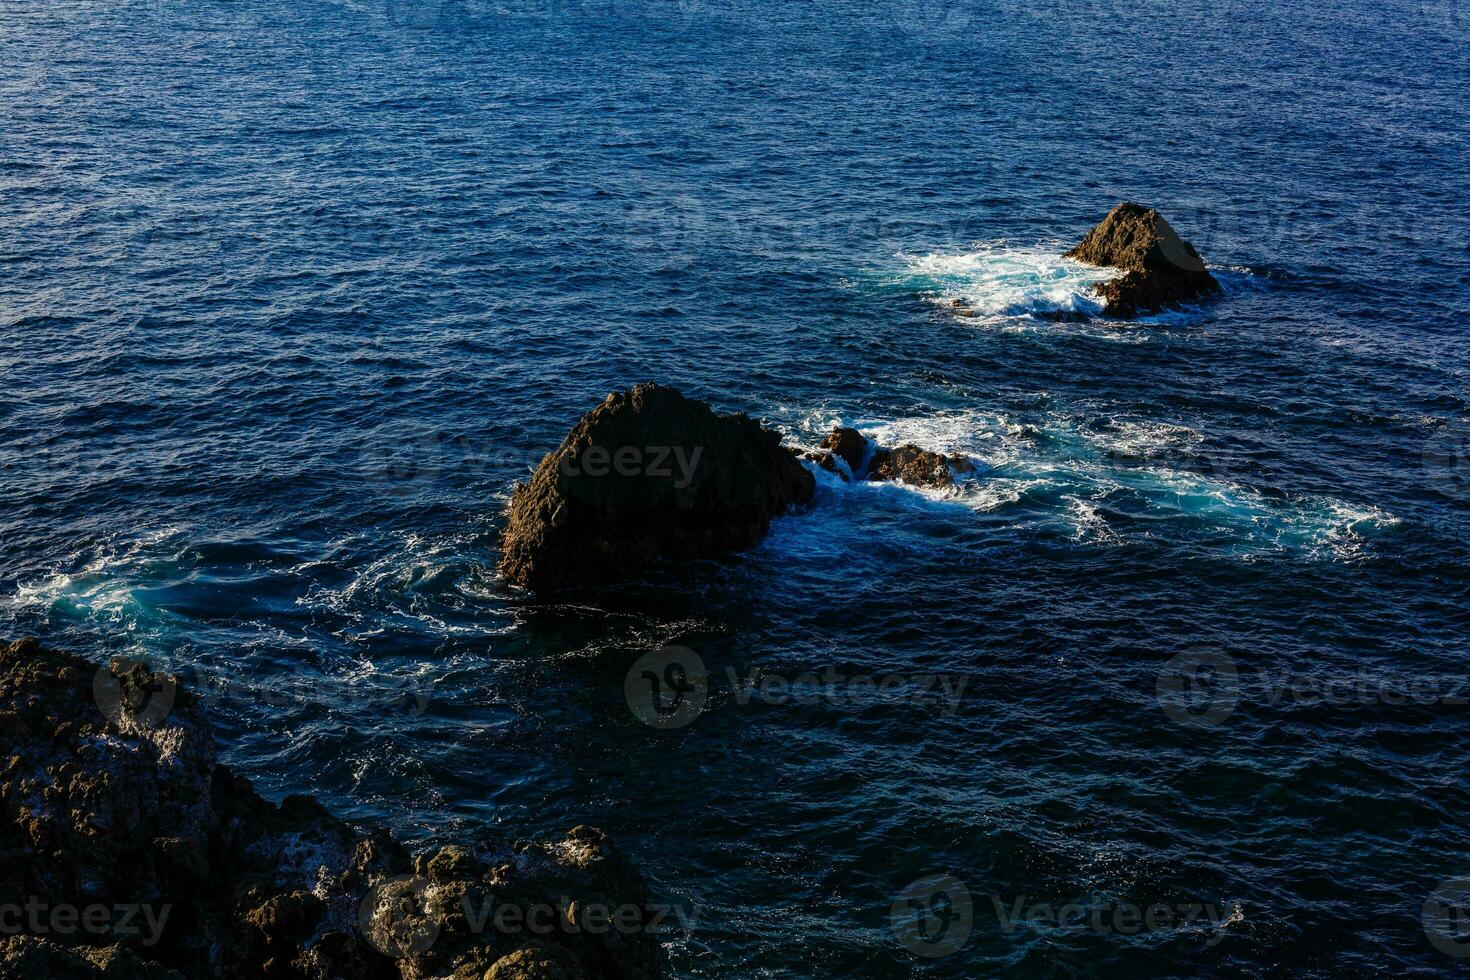 atlántico Oceano salvaje costa, tenerife, canario islas, España foto